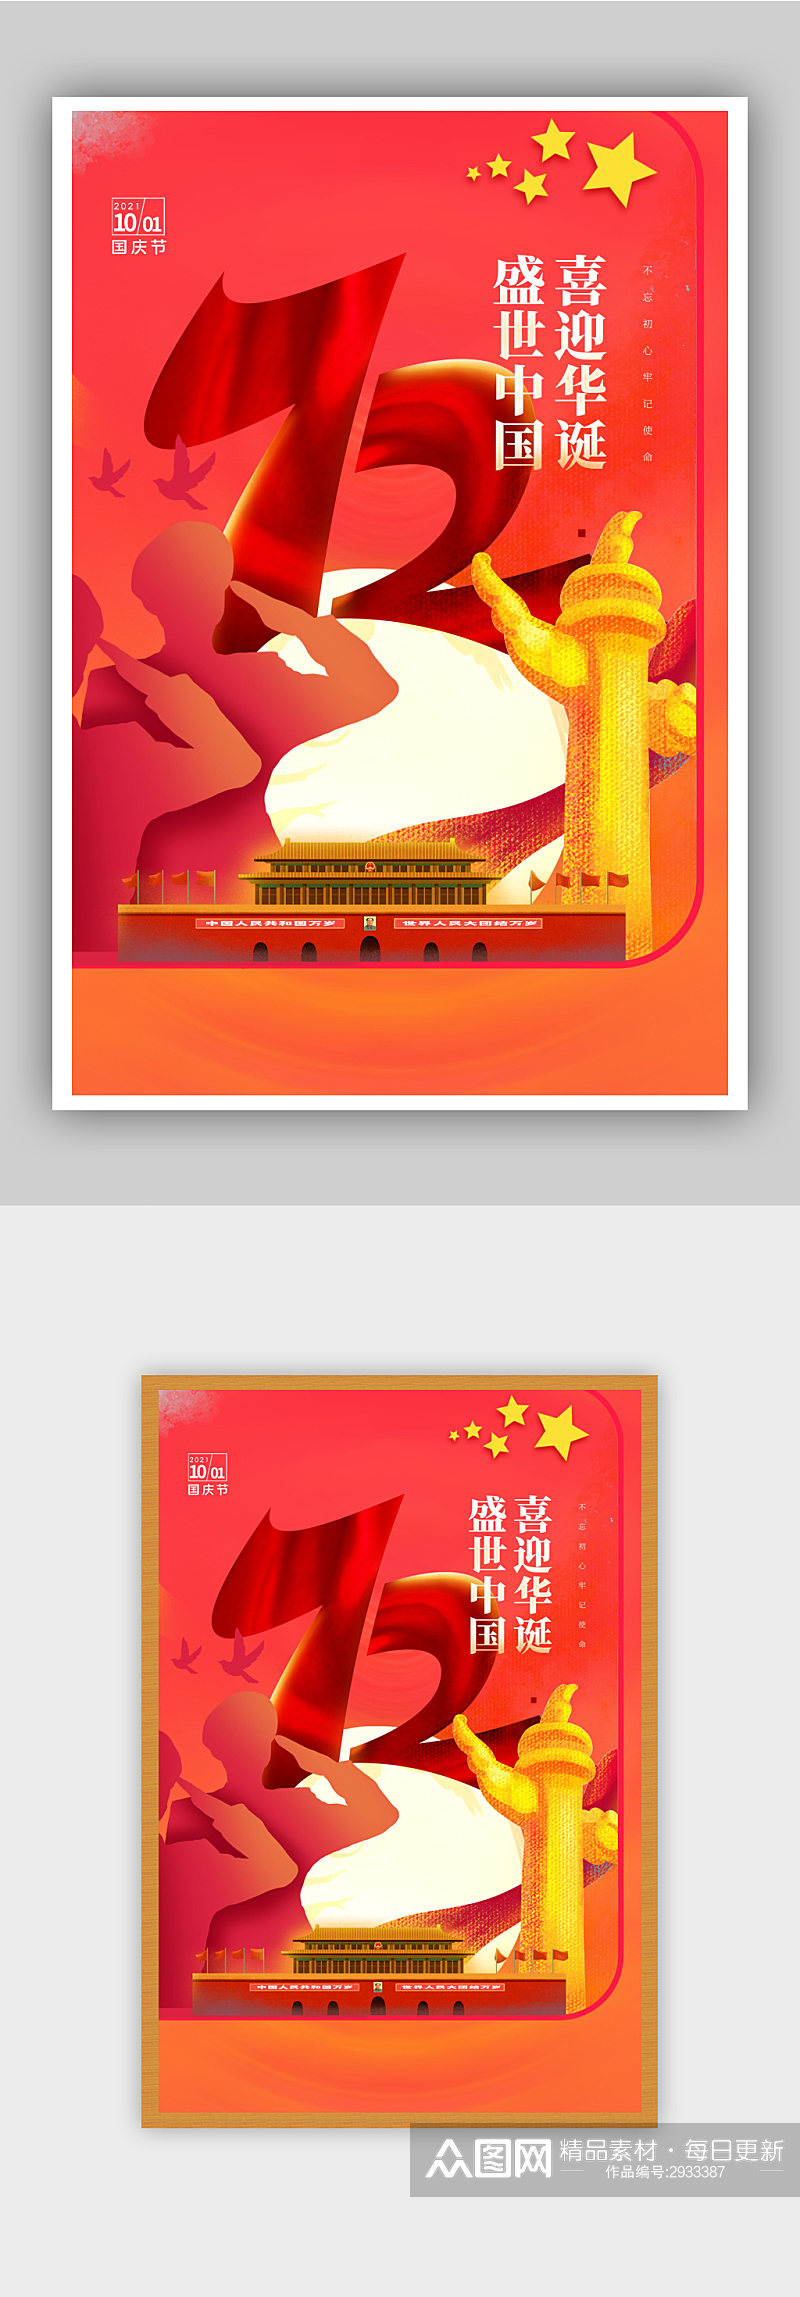 国泰家和国庆节宣传海报素材